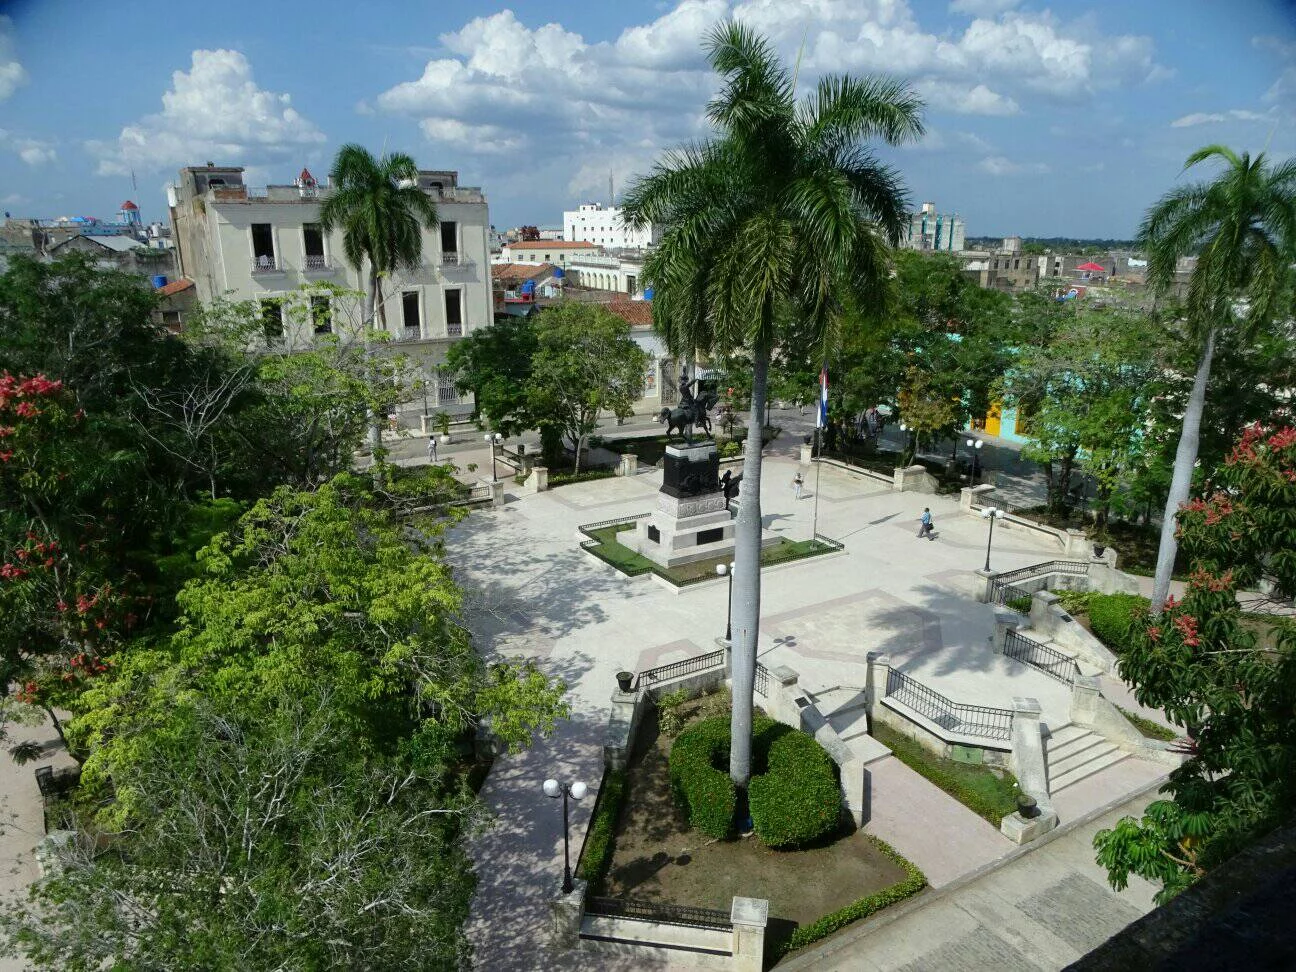  El parque de los camagüeyanos